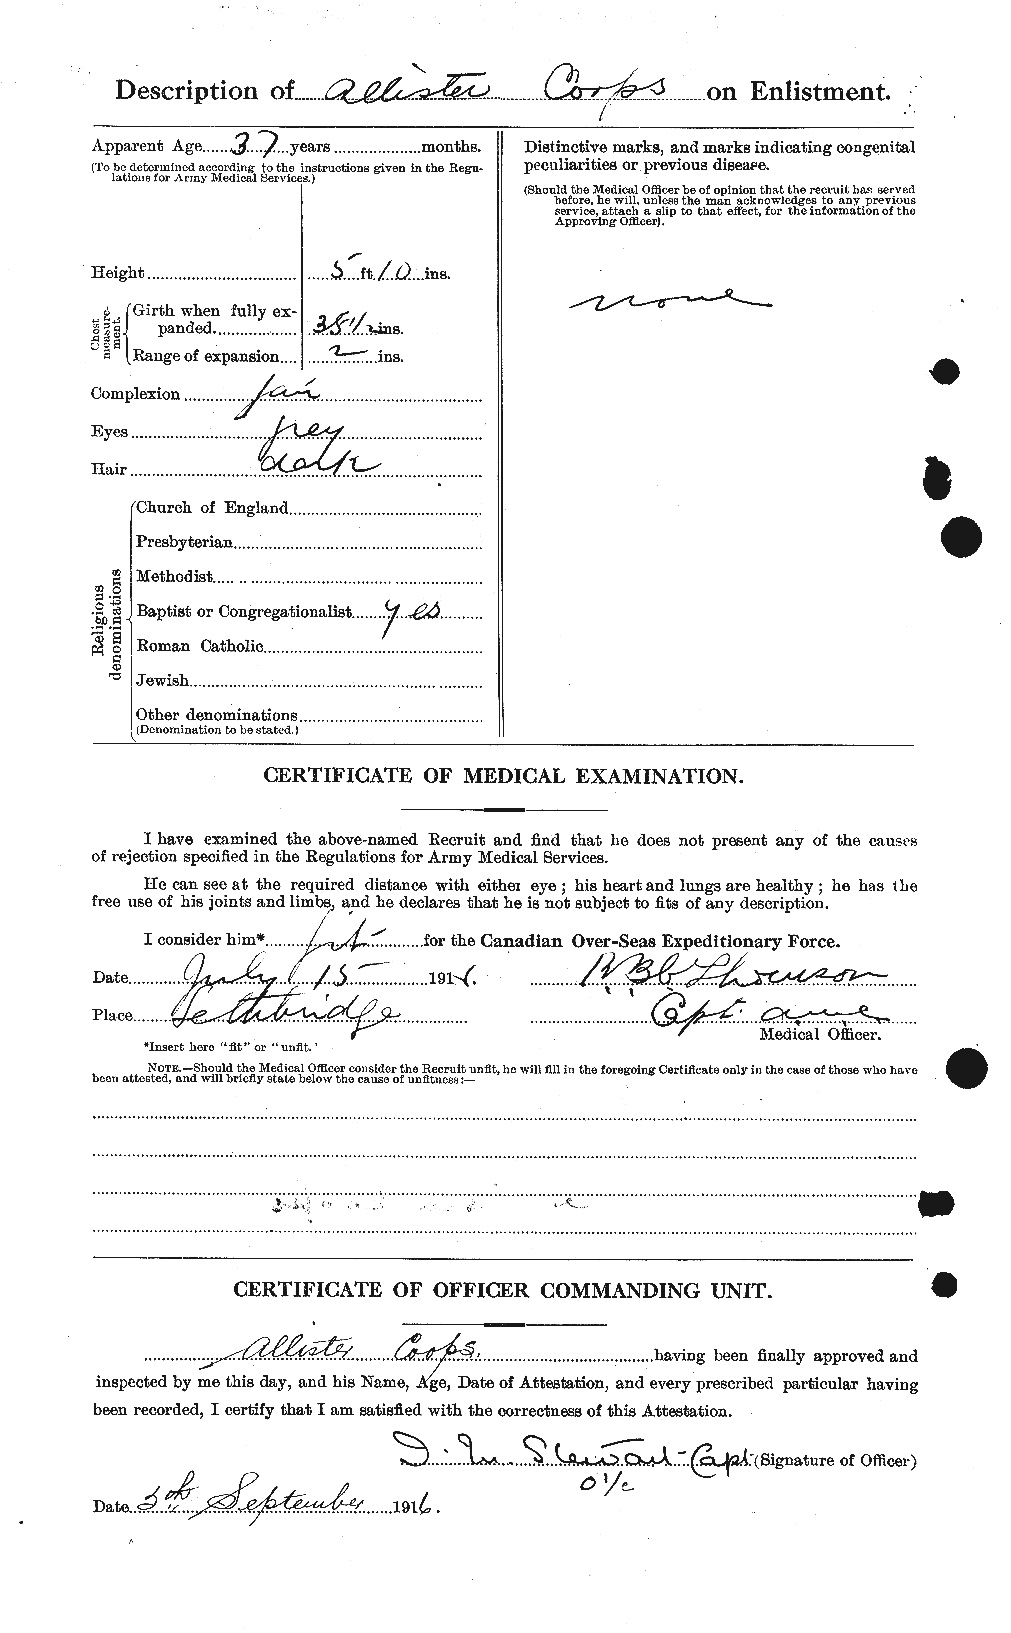 Dossiers du Personnel de la Première Guerre mondiale - CEC 057684b